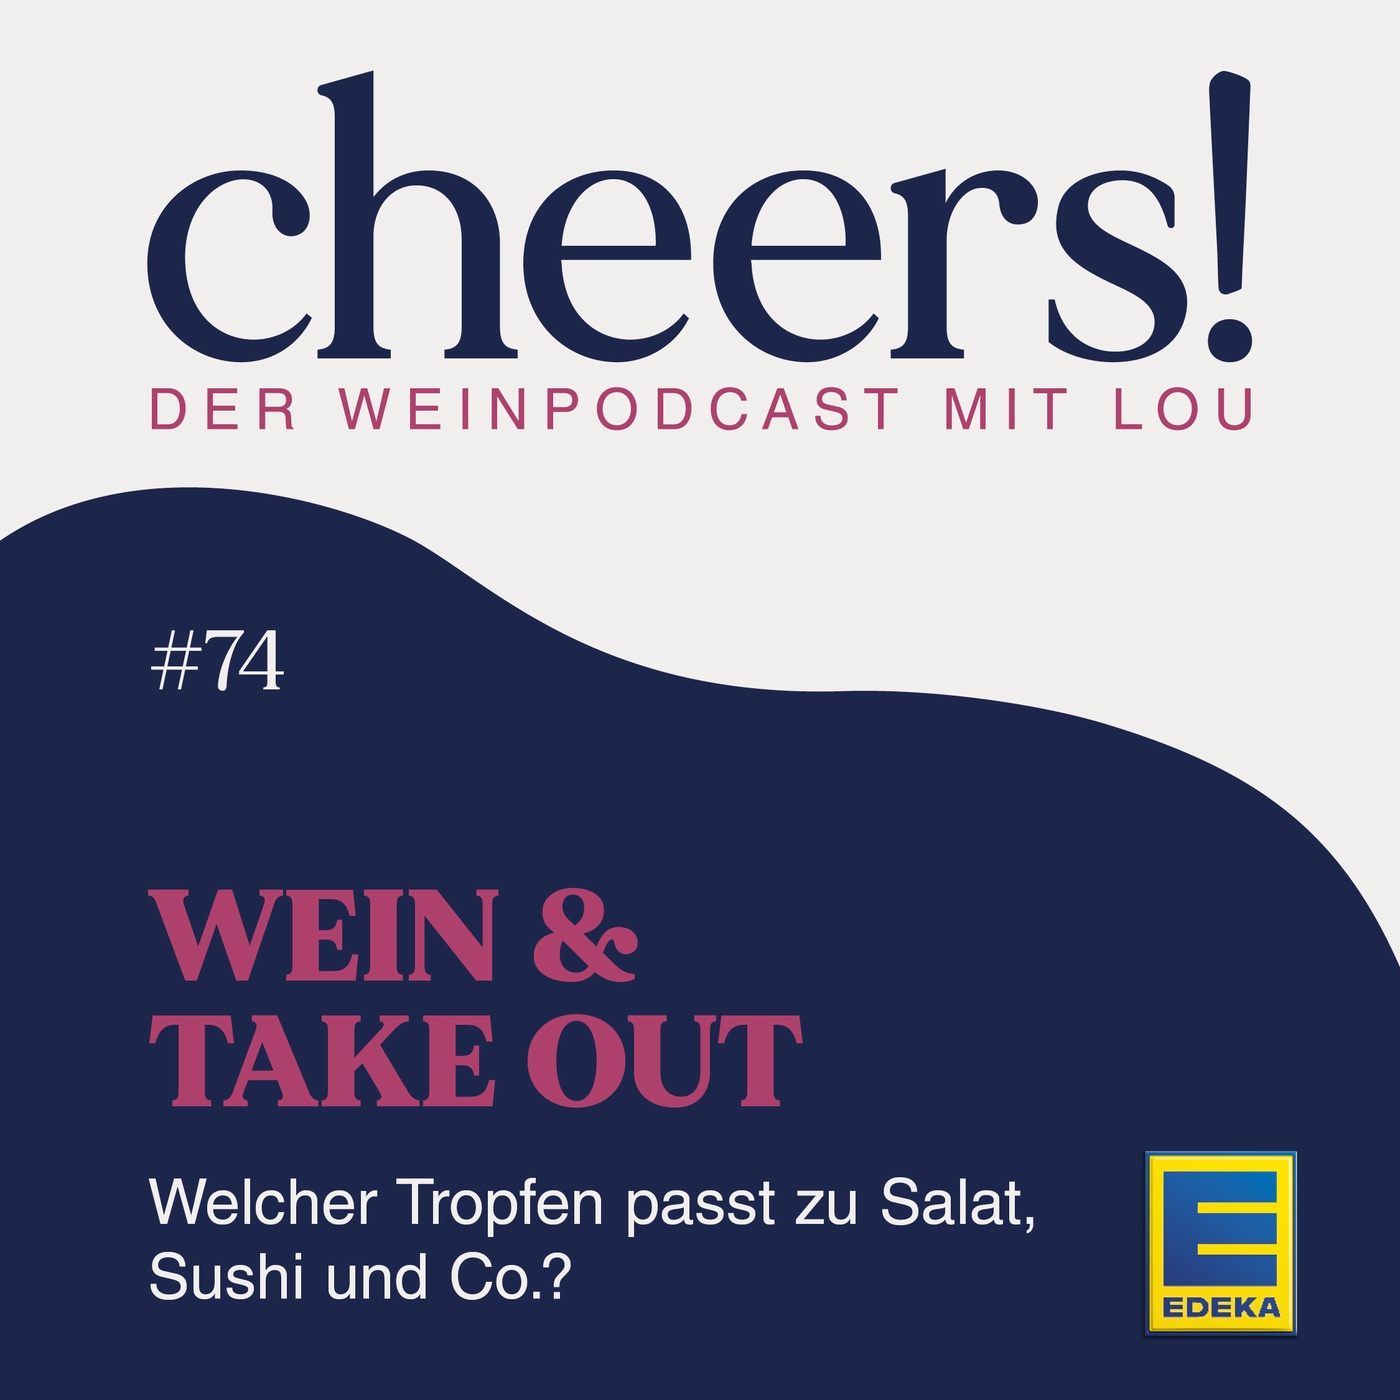 74: Wein & Take Out – Welcher Tropfen passt zu Salat, Sushi und Co.?